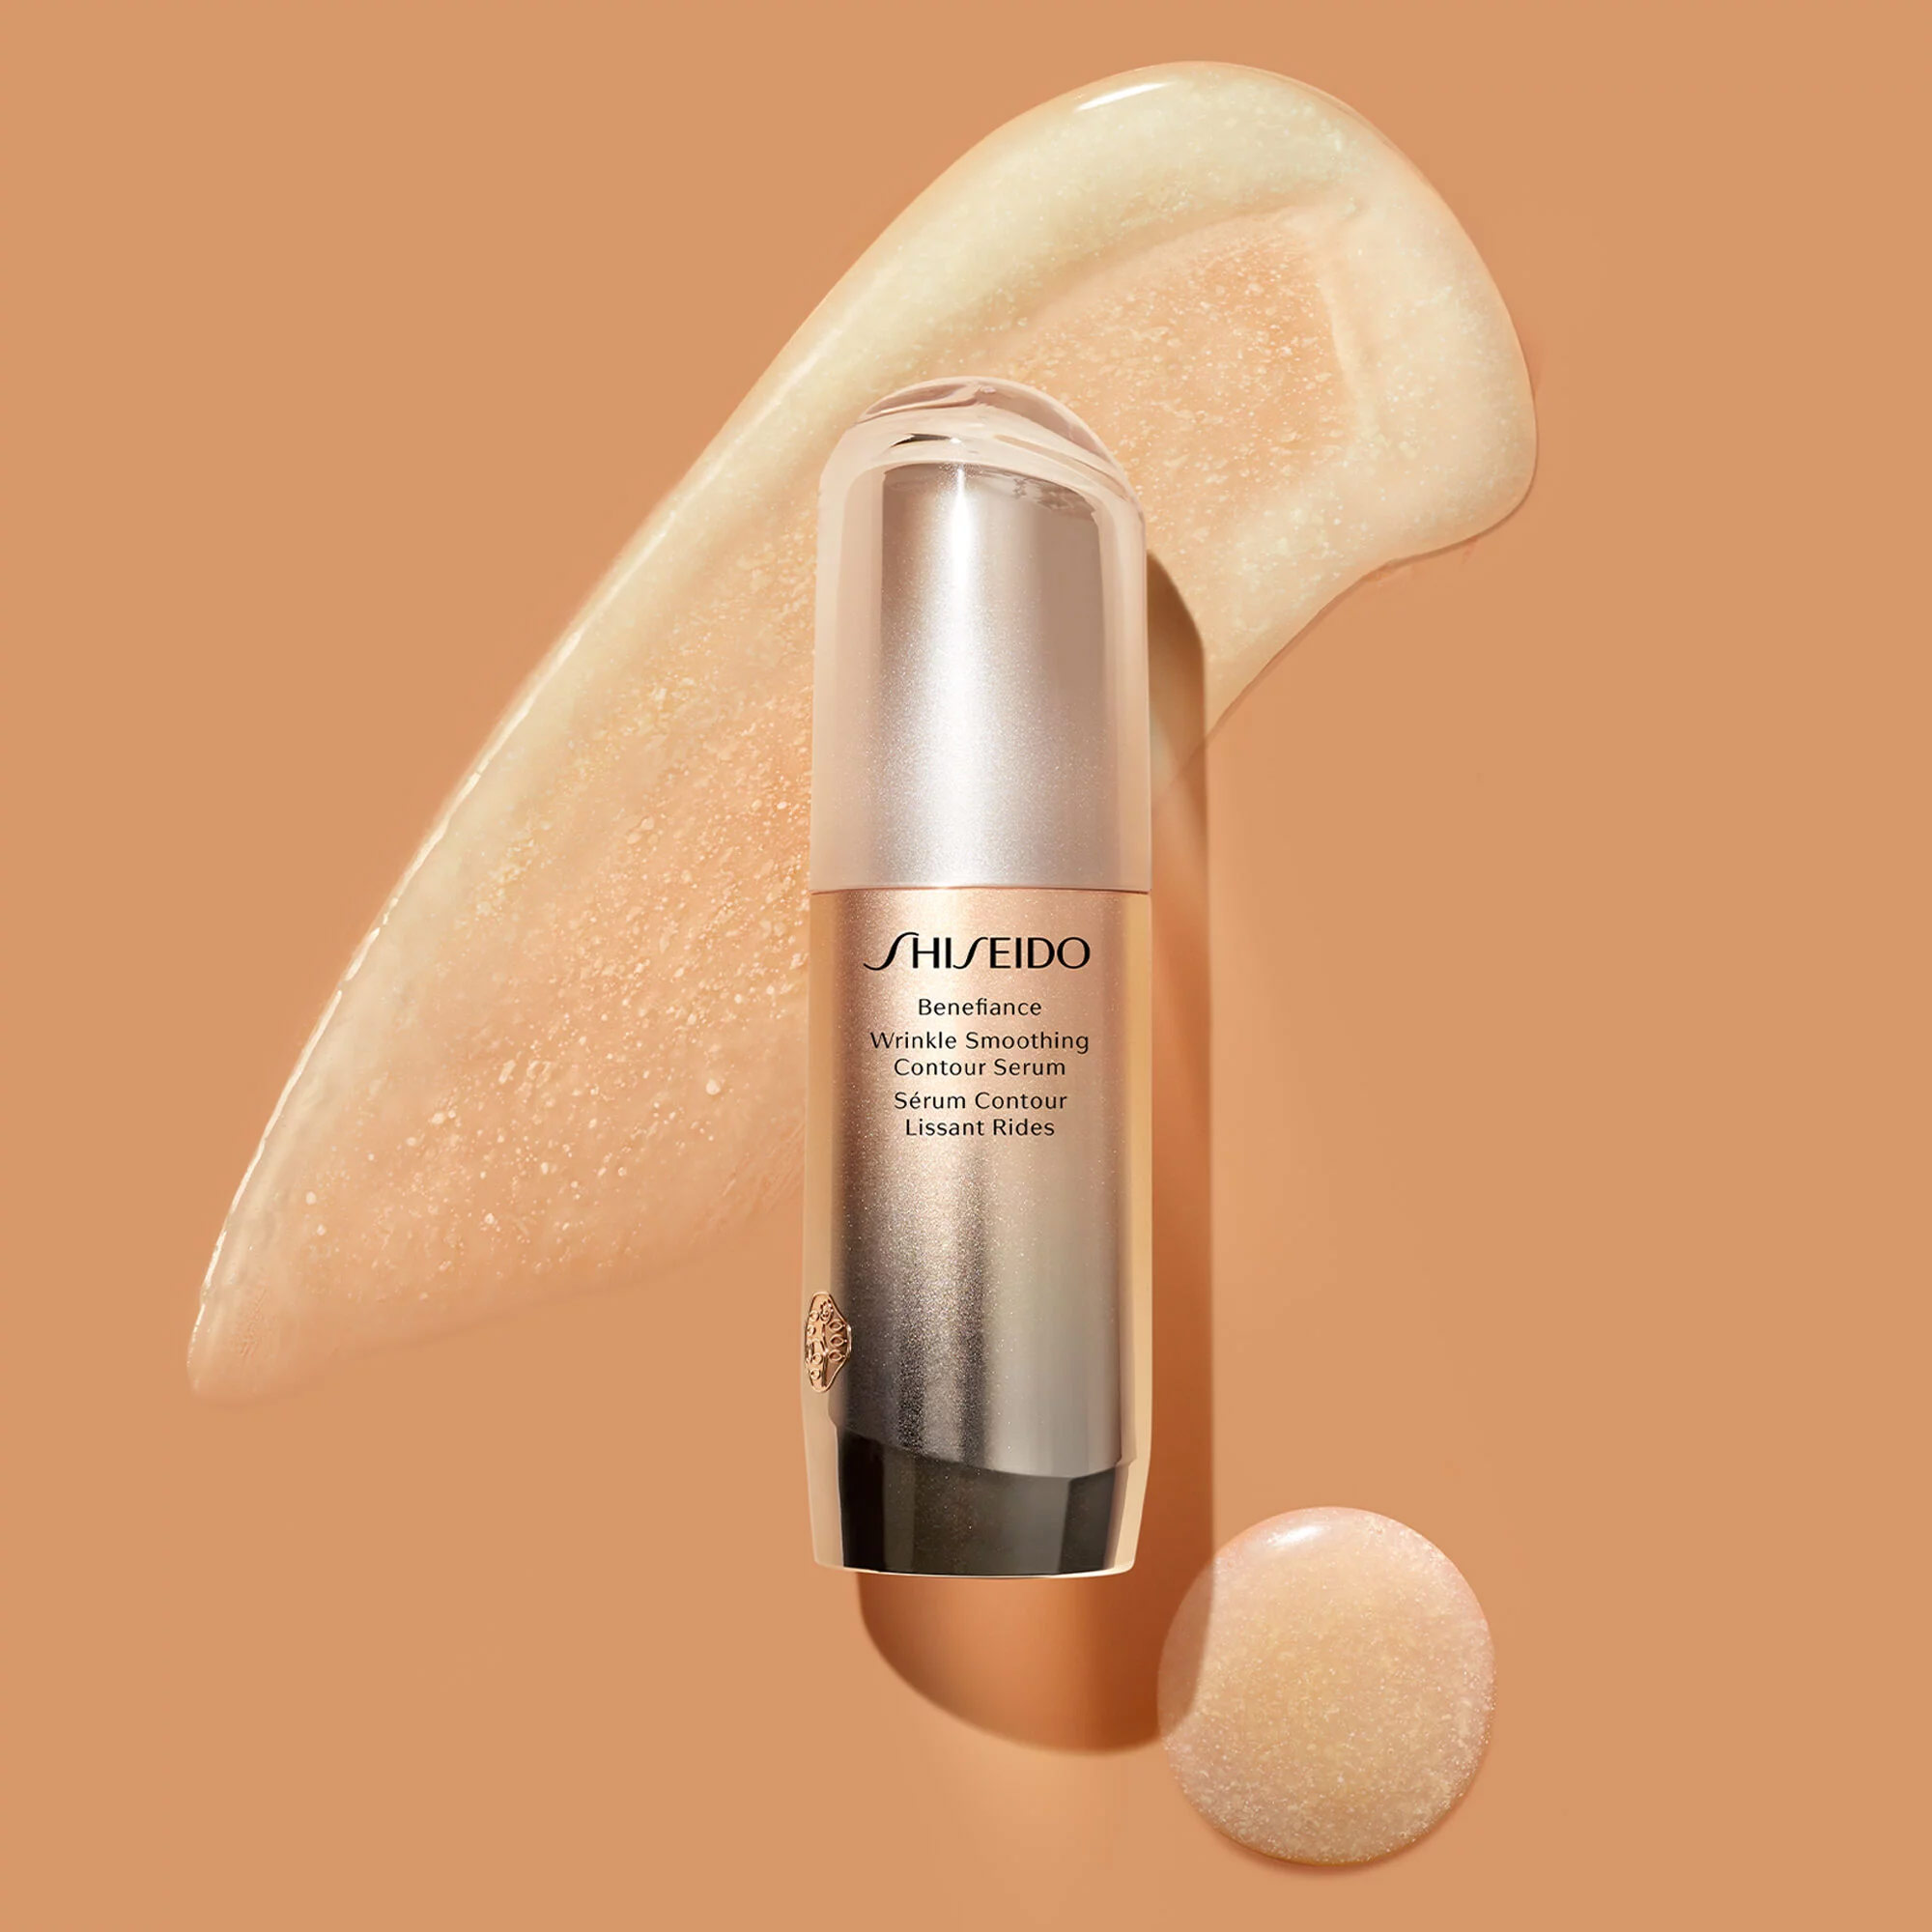 Shiseido benefiance wrinkle smoothing. Shiseido Benefiance сыворотка.